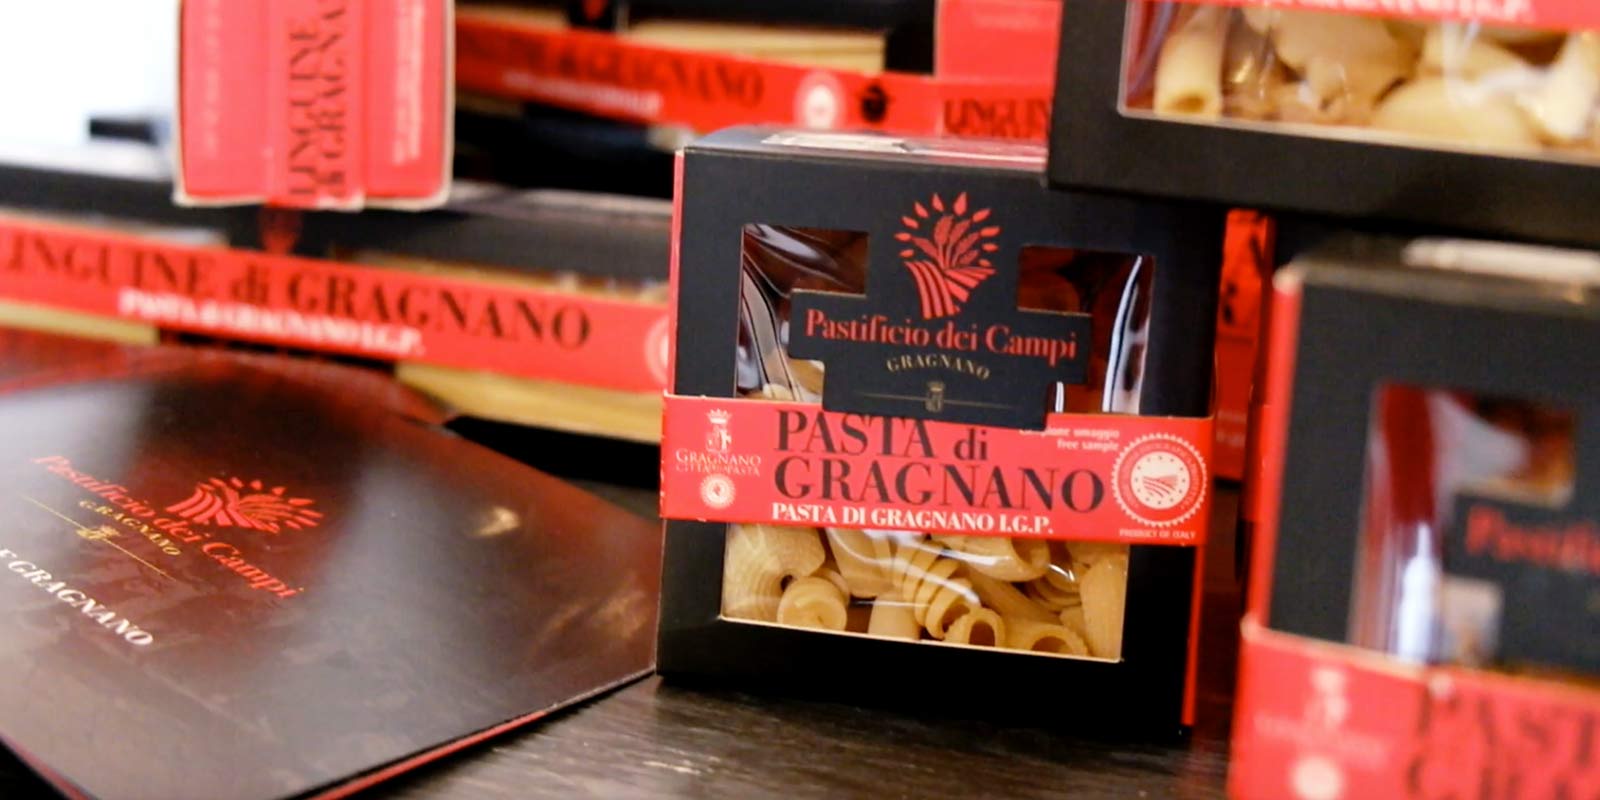 Pastifico dei Campi - Pasta di Gragnano IGP Pastificio dei Campi produceert enkele Italiaanse klassiekers en enkele originele creaties. De pasta is gemaakt van 100% Italiaans durumtarwegriesmeel en geextrudeerd met behulp van bronzen mallen.